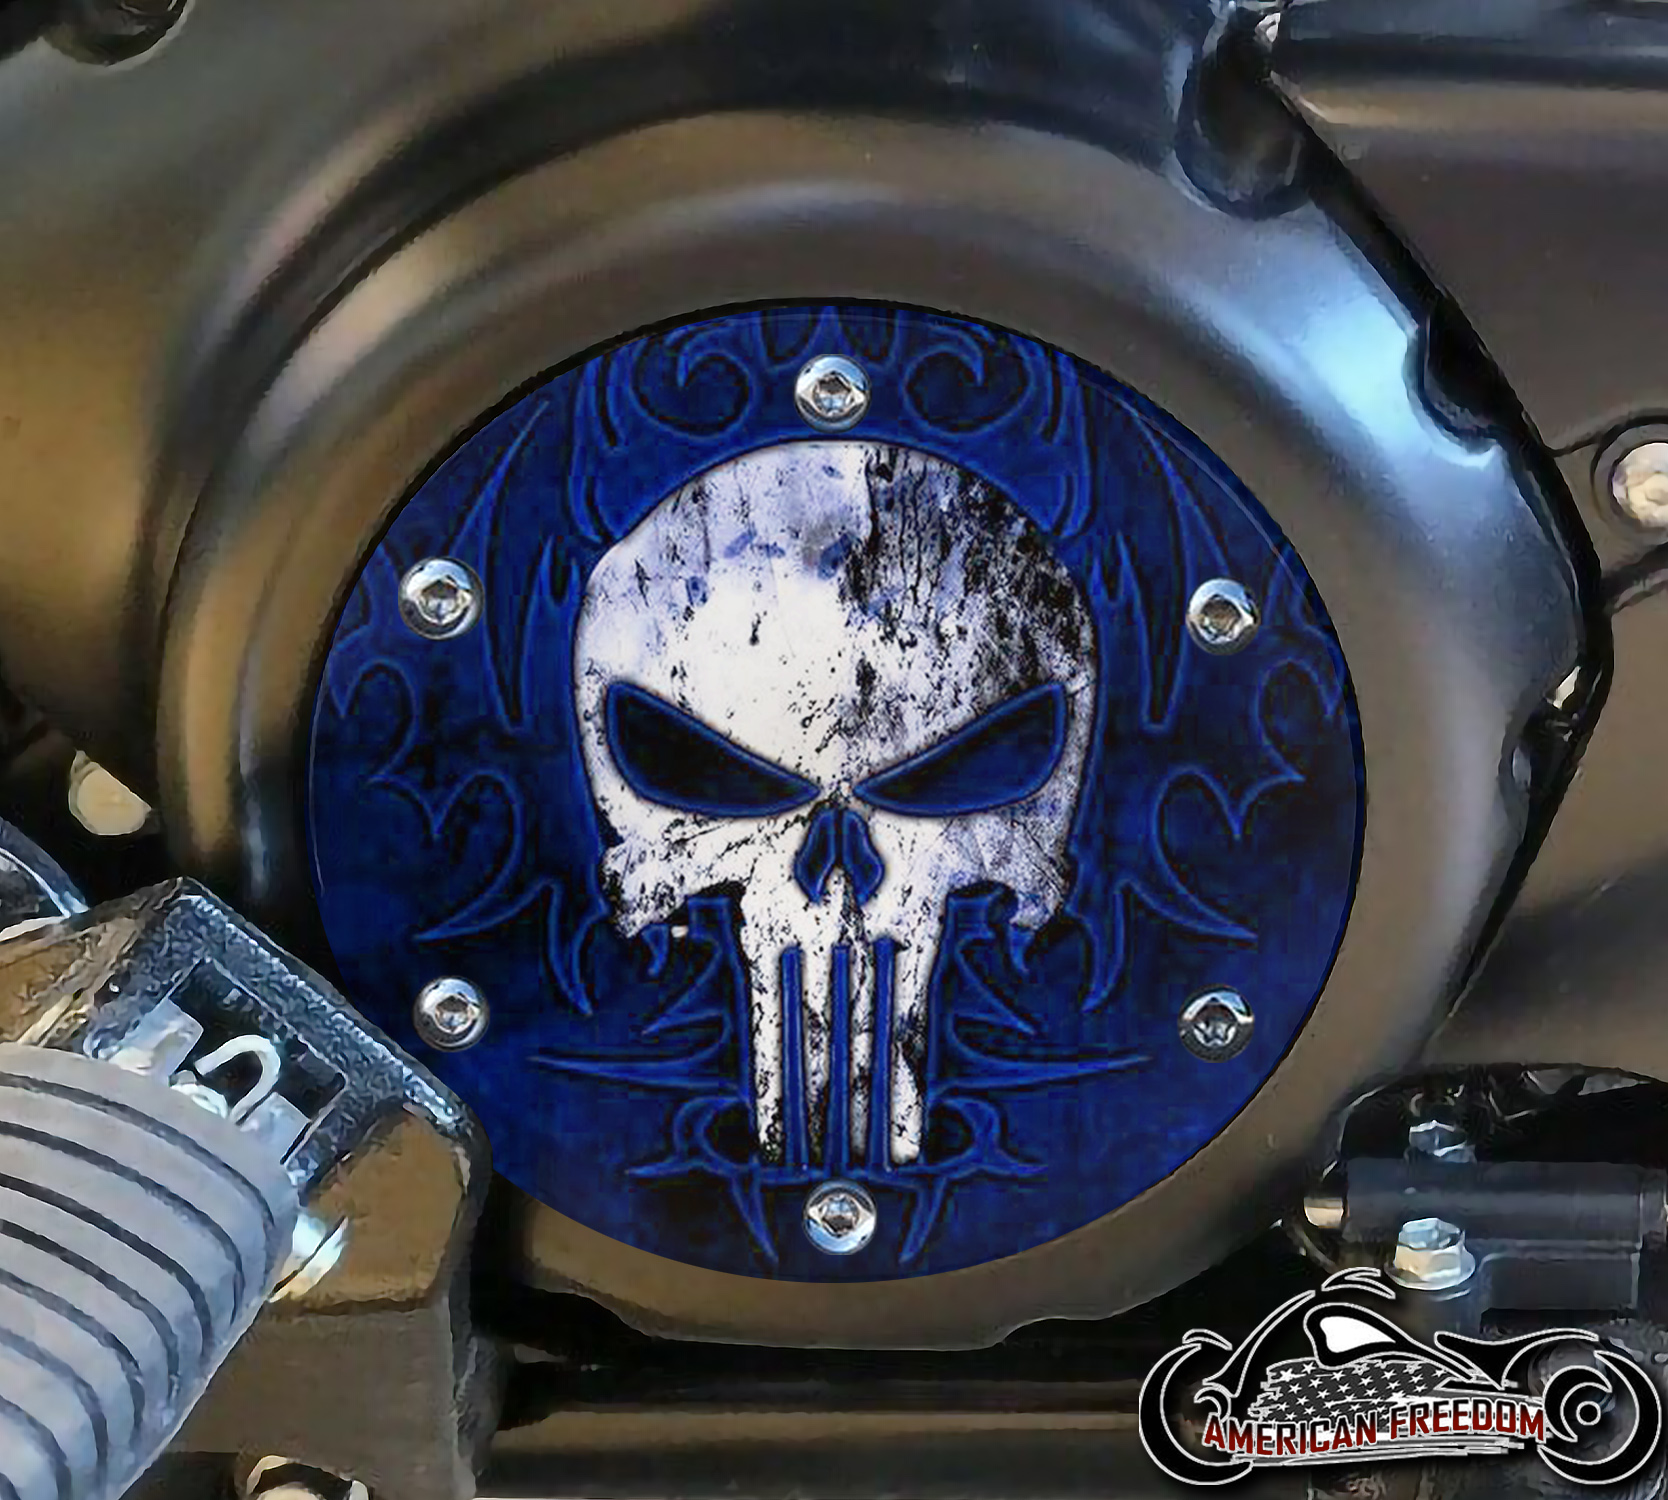 SUZUKI M109R Derby/Engine Cover - Punisher Tribal (Blue)